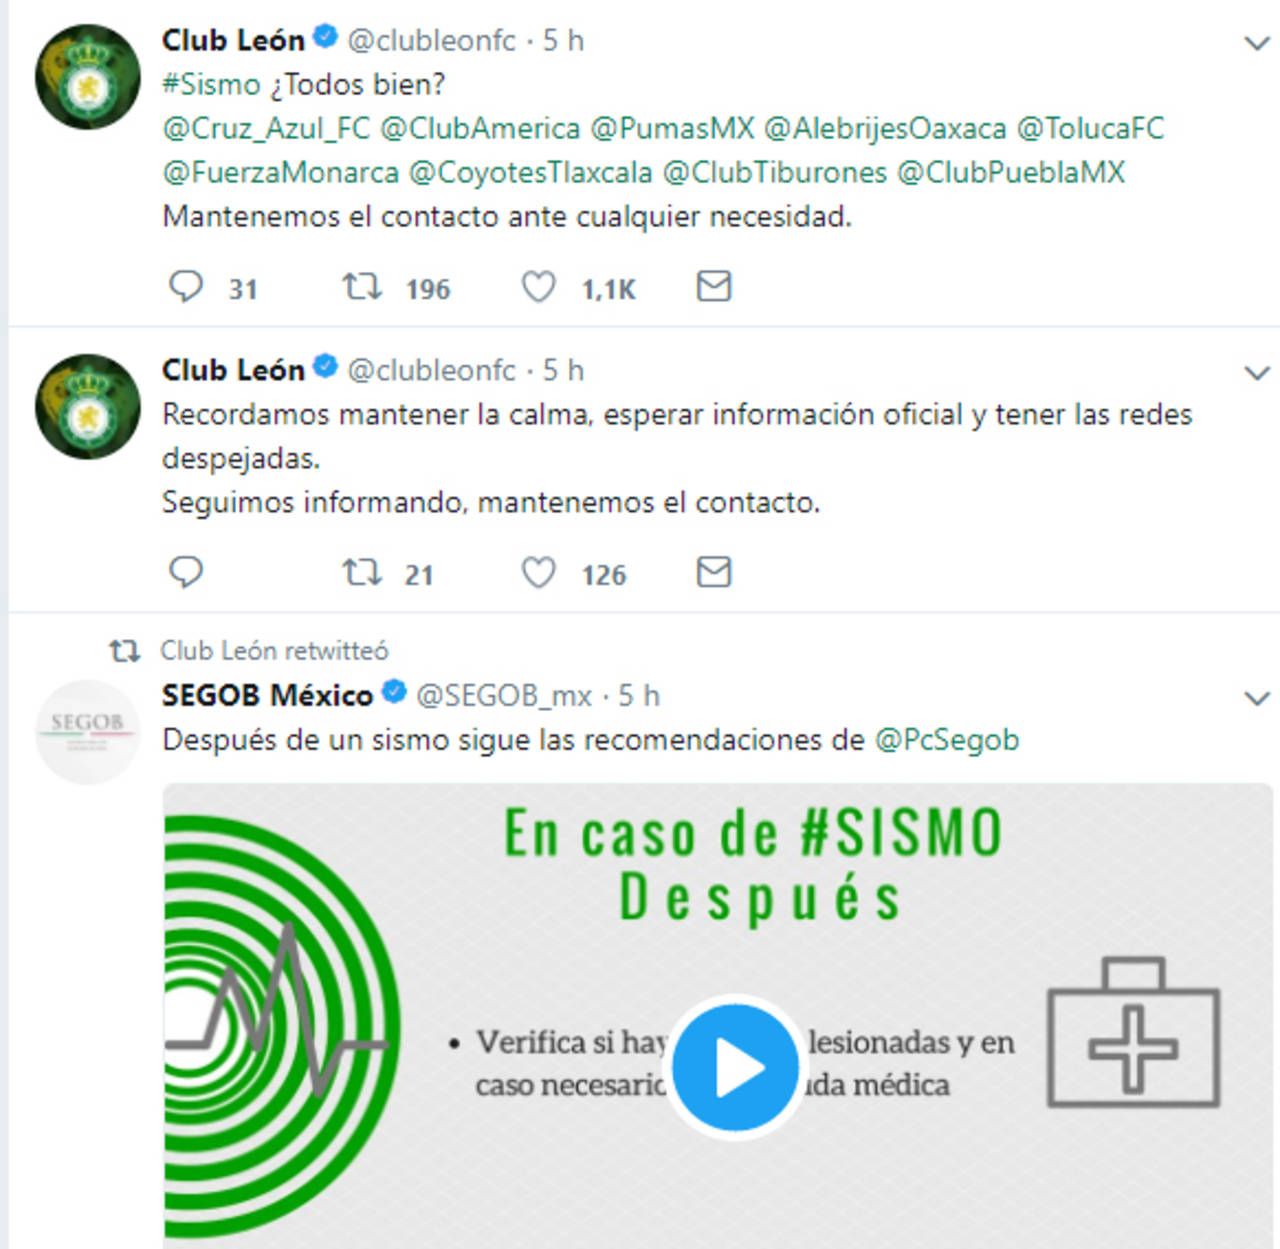 León notificó a través de Twitter sobre el sismo de ayer. Equipos MX muestran apoyo tras el sismo